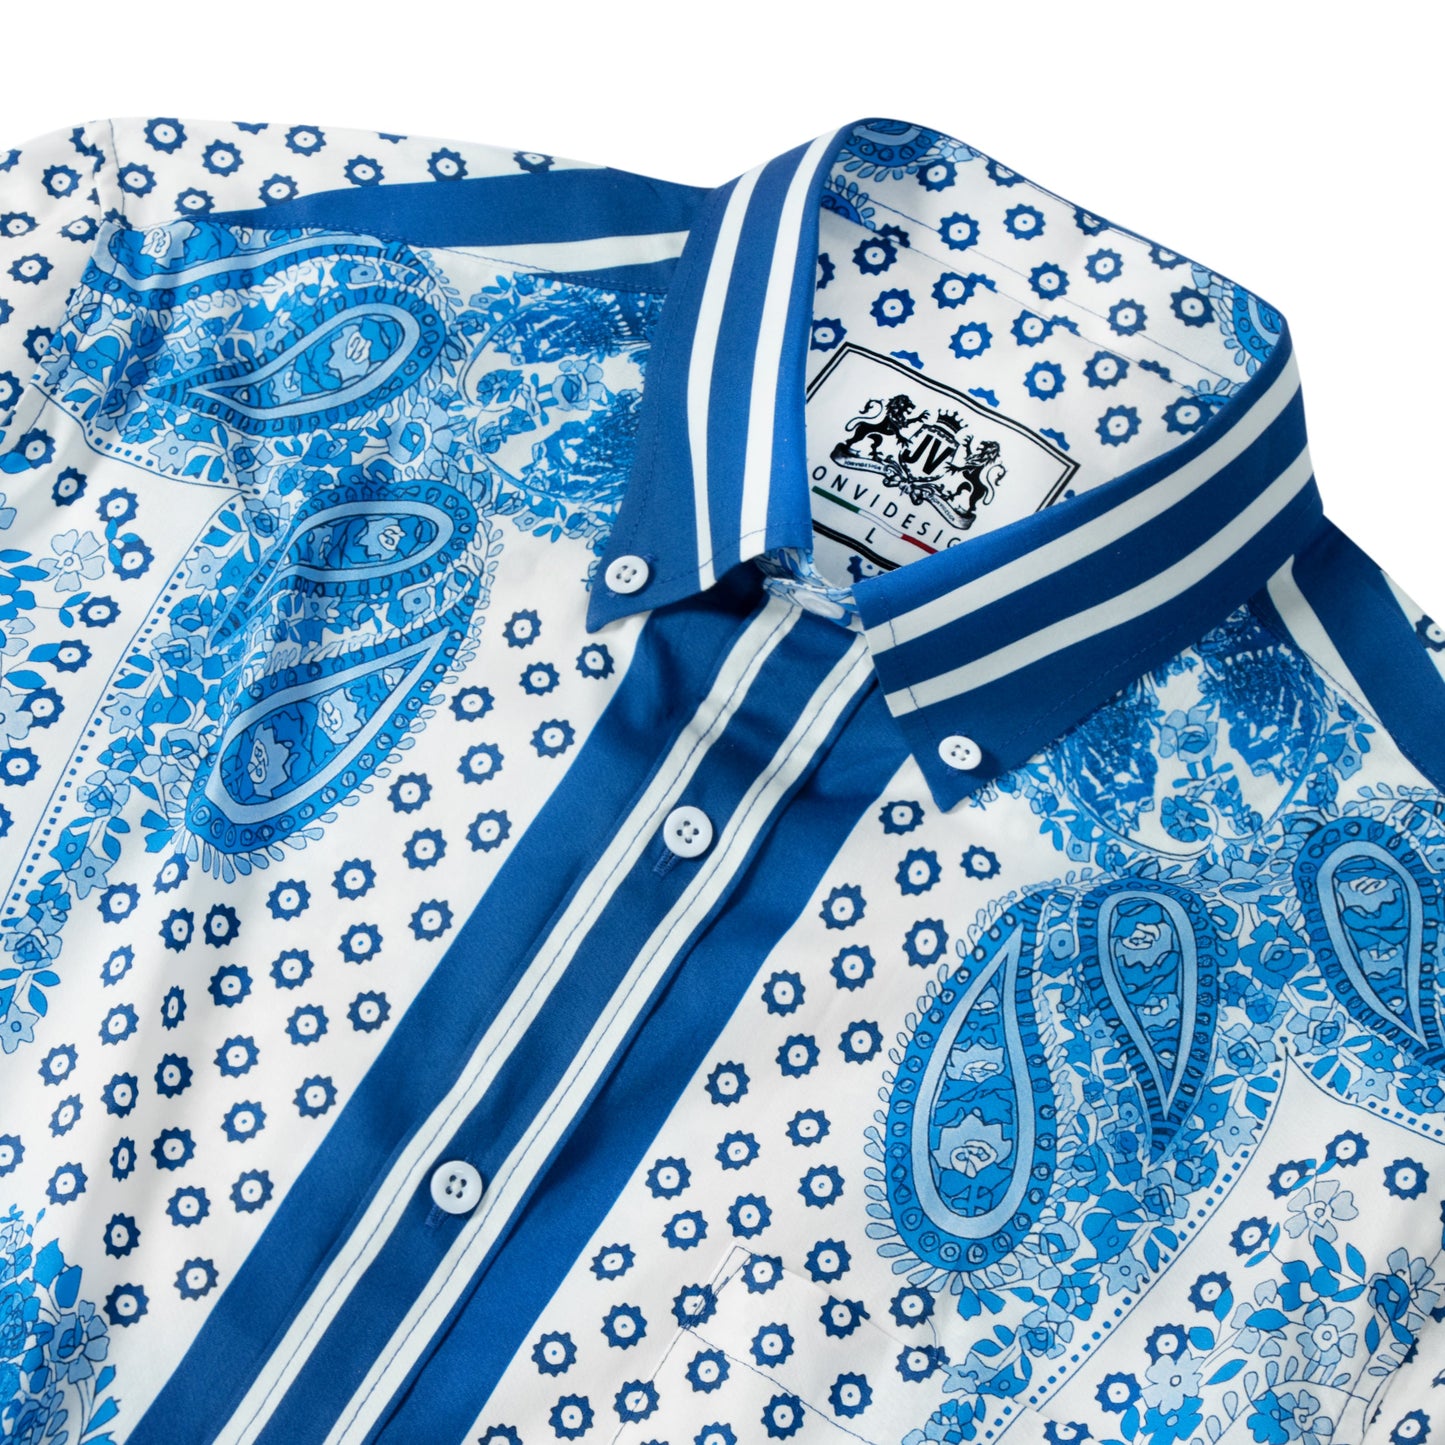 Blue Paisley Gear Pattern Long Sleeve Button Down Shirt Jonvidesign